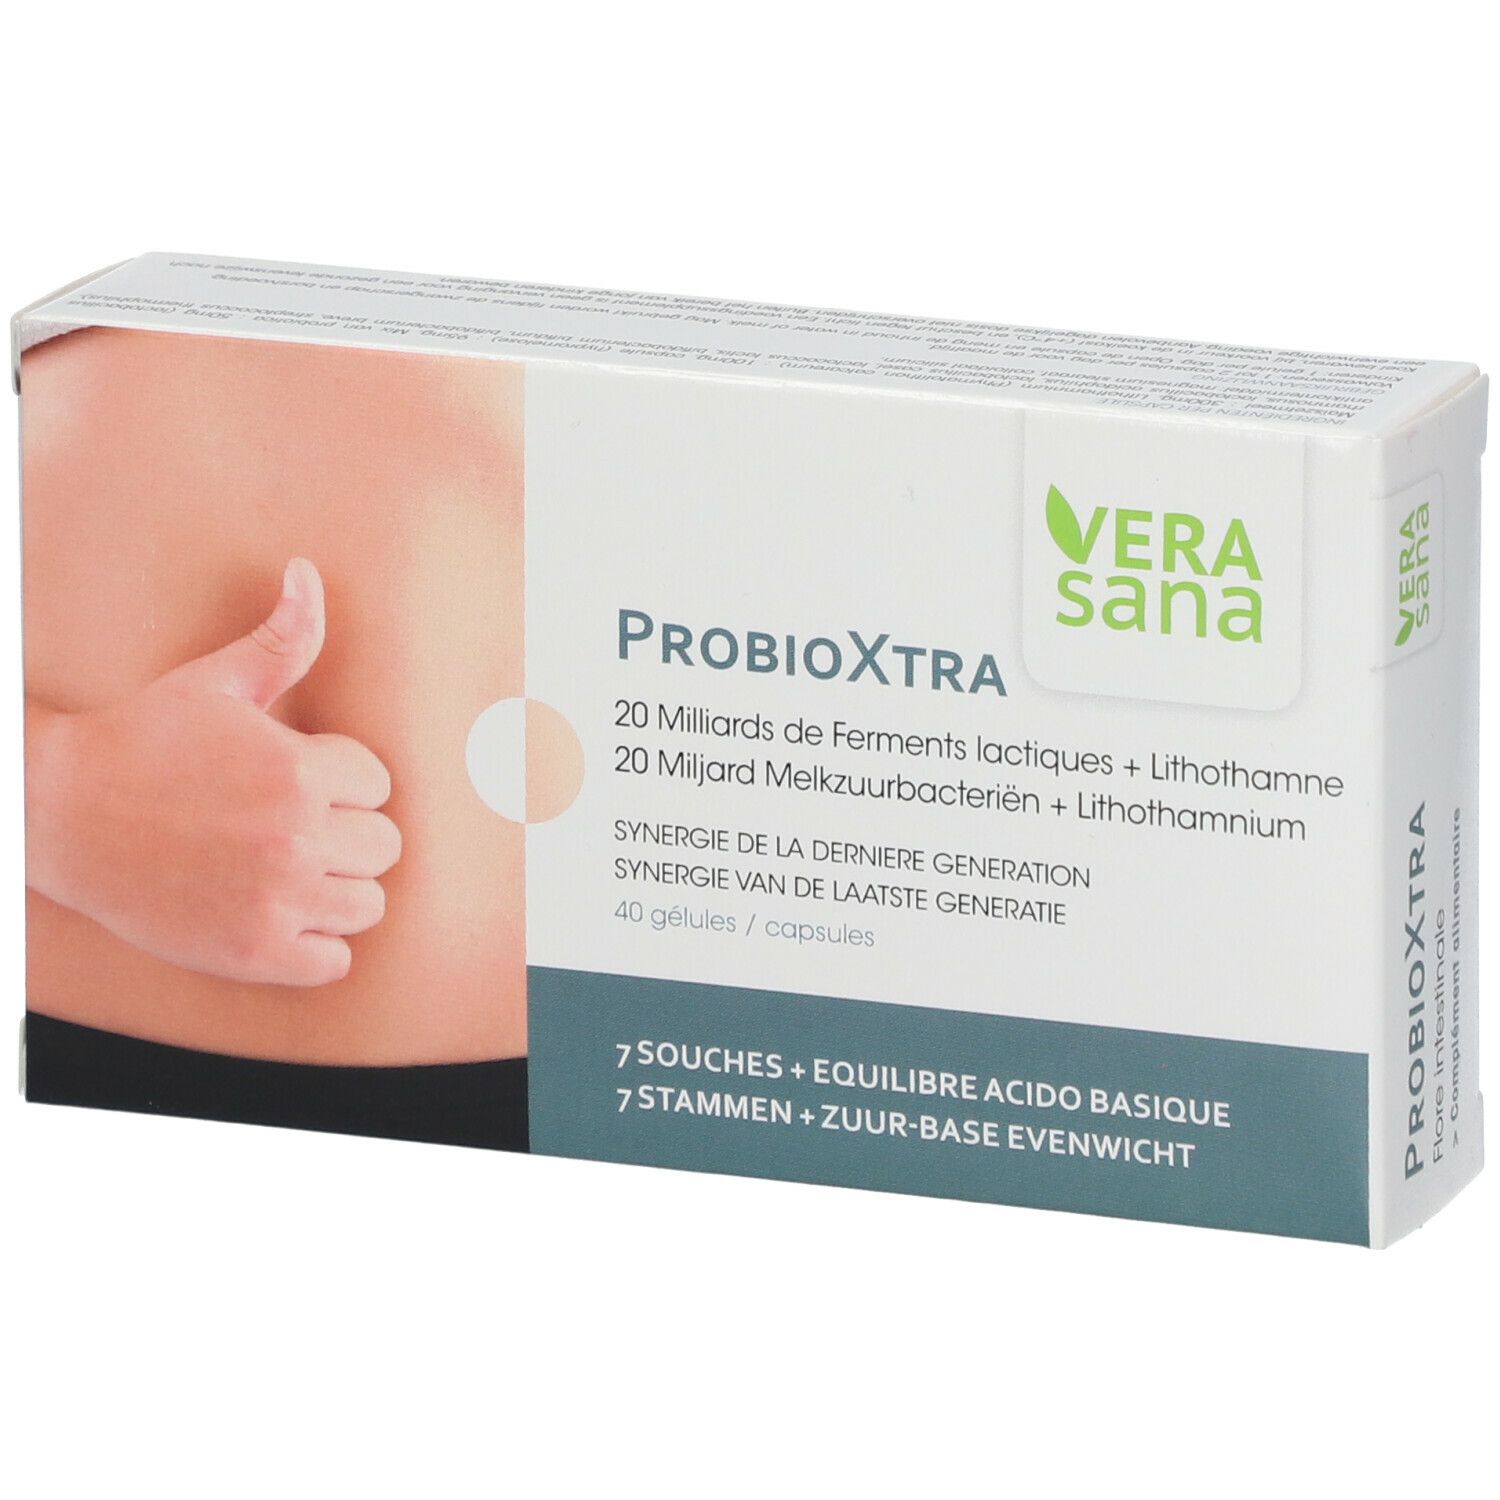 Vera sana Probioxtra